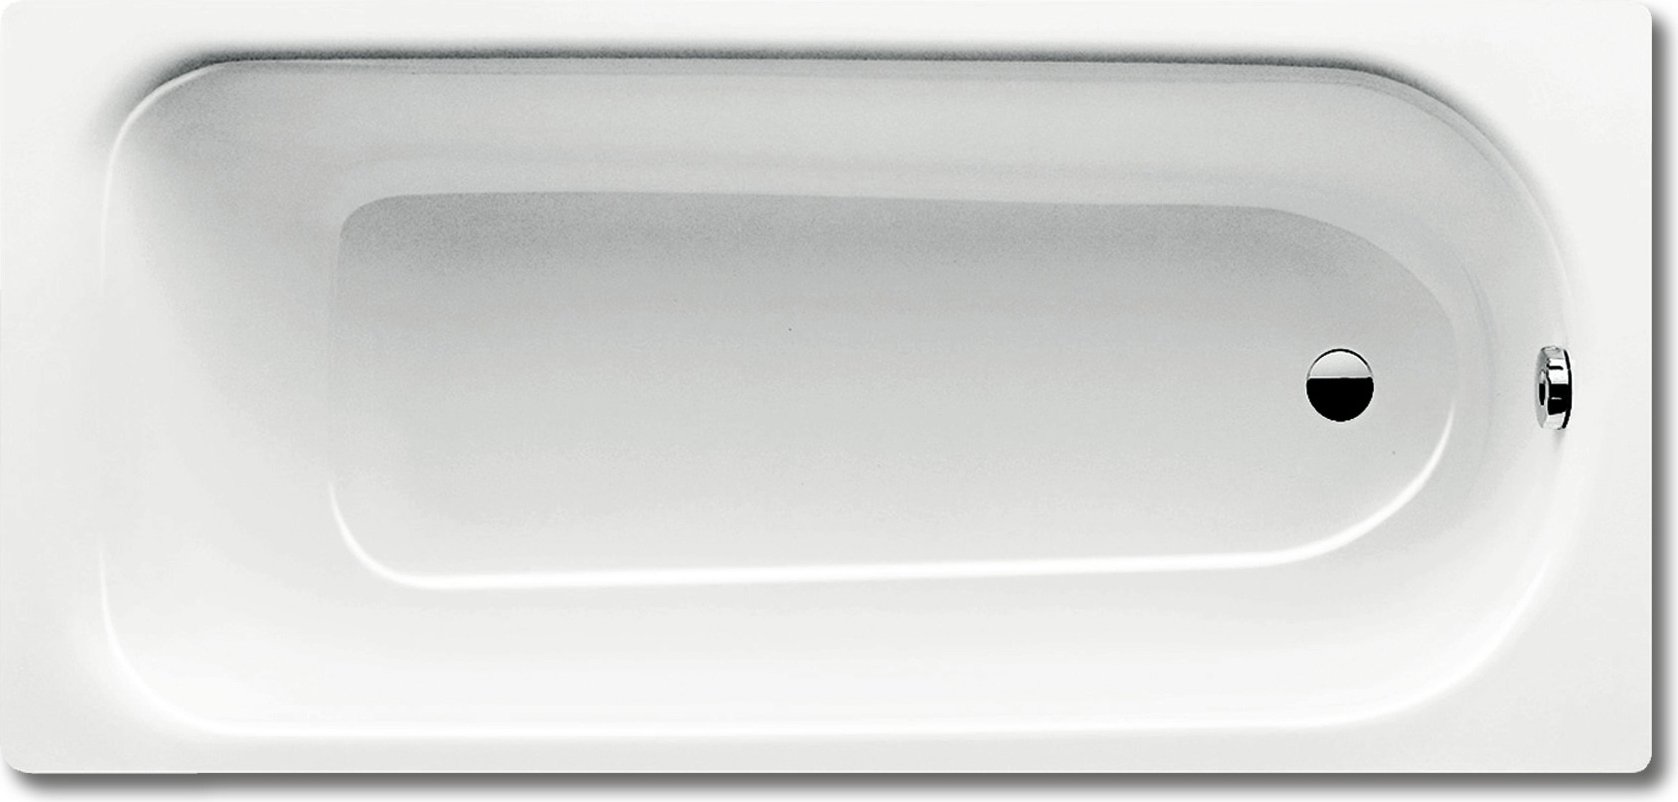 Стальная ванна Kaldewei Advantage Saniform Plus 362-1 с покрытием Anti-Slip и Easy-Clean 160x70, белый, сталь  - купить со скидкой